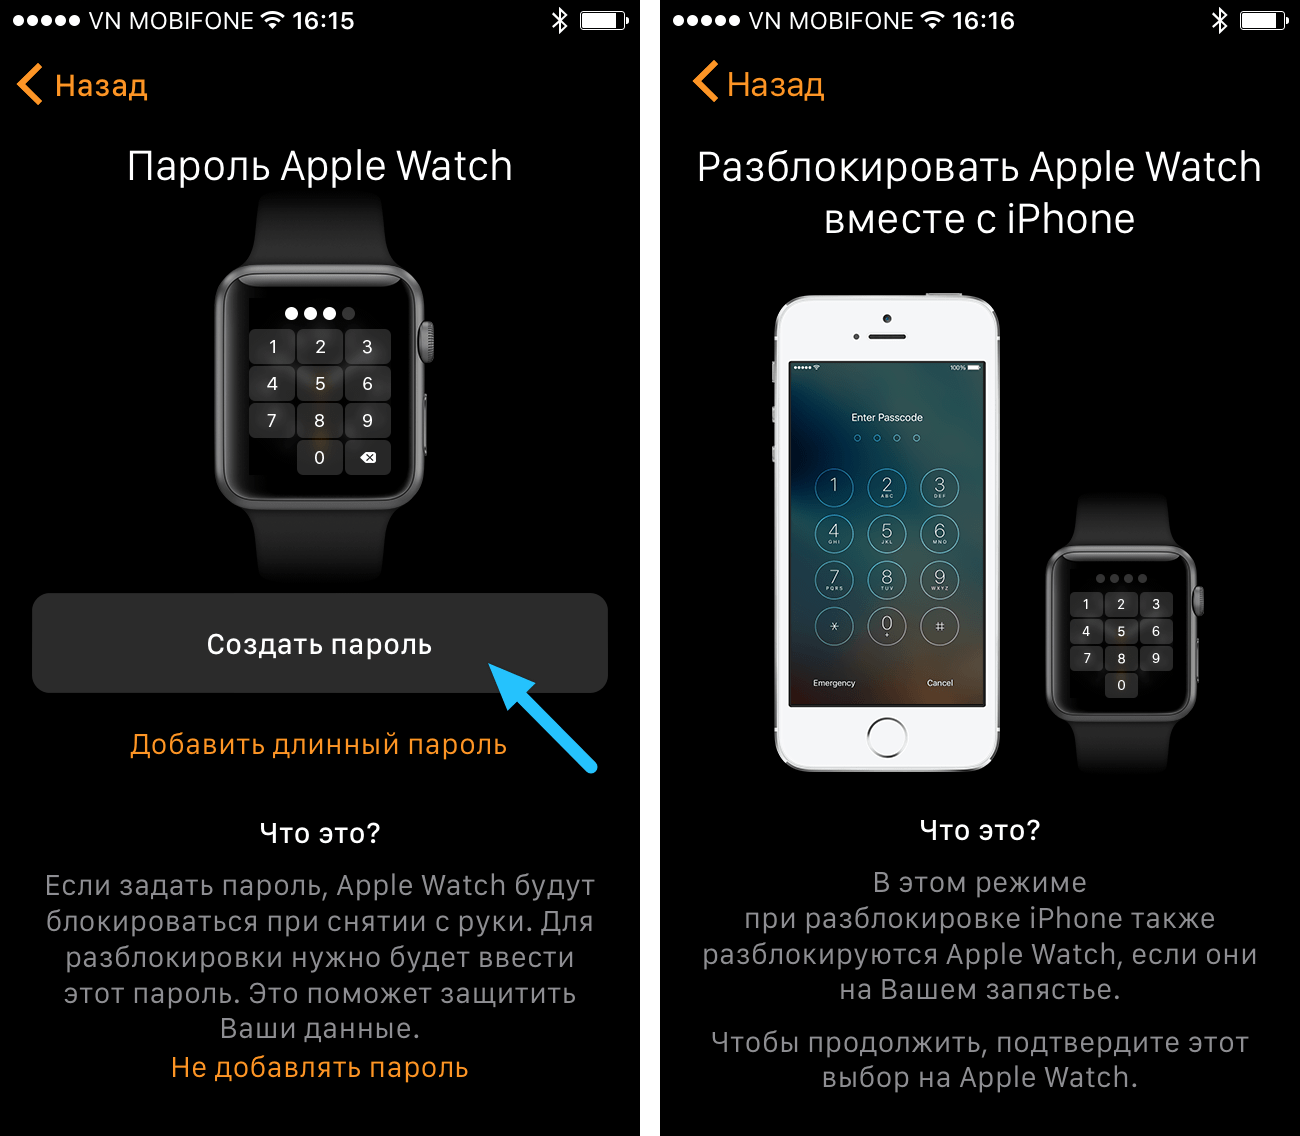 Как настроить контакты на часах. Как настроить часы Apple watch к телефону. Значок и на Эппл вотч. Где находится значок i на Apple watch 6. Значок i на эпл вотч.